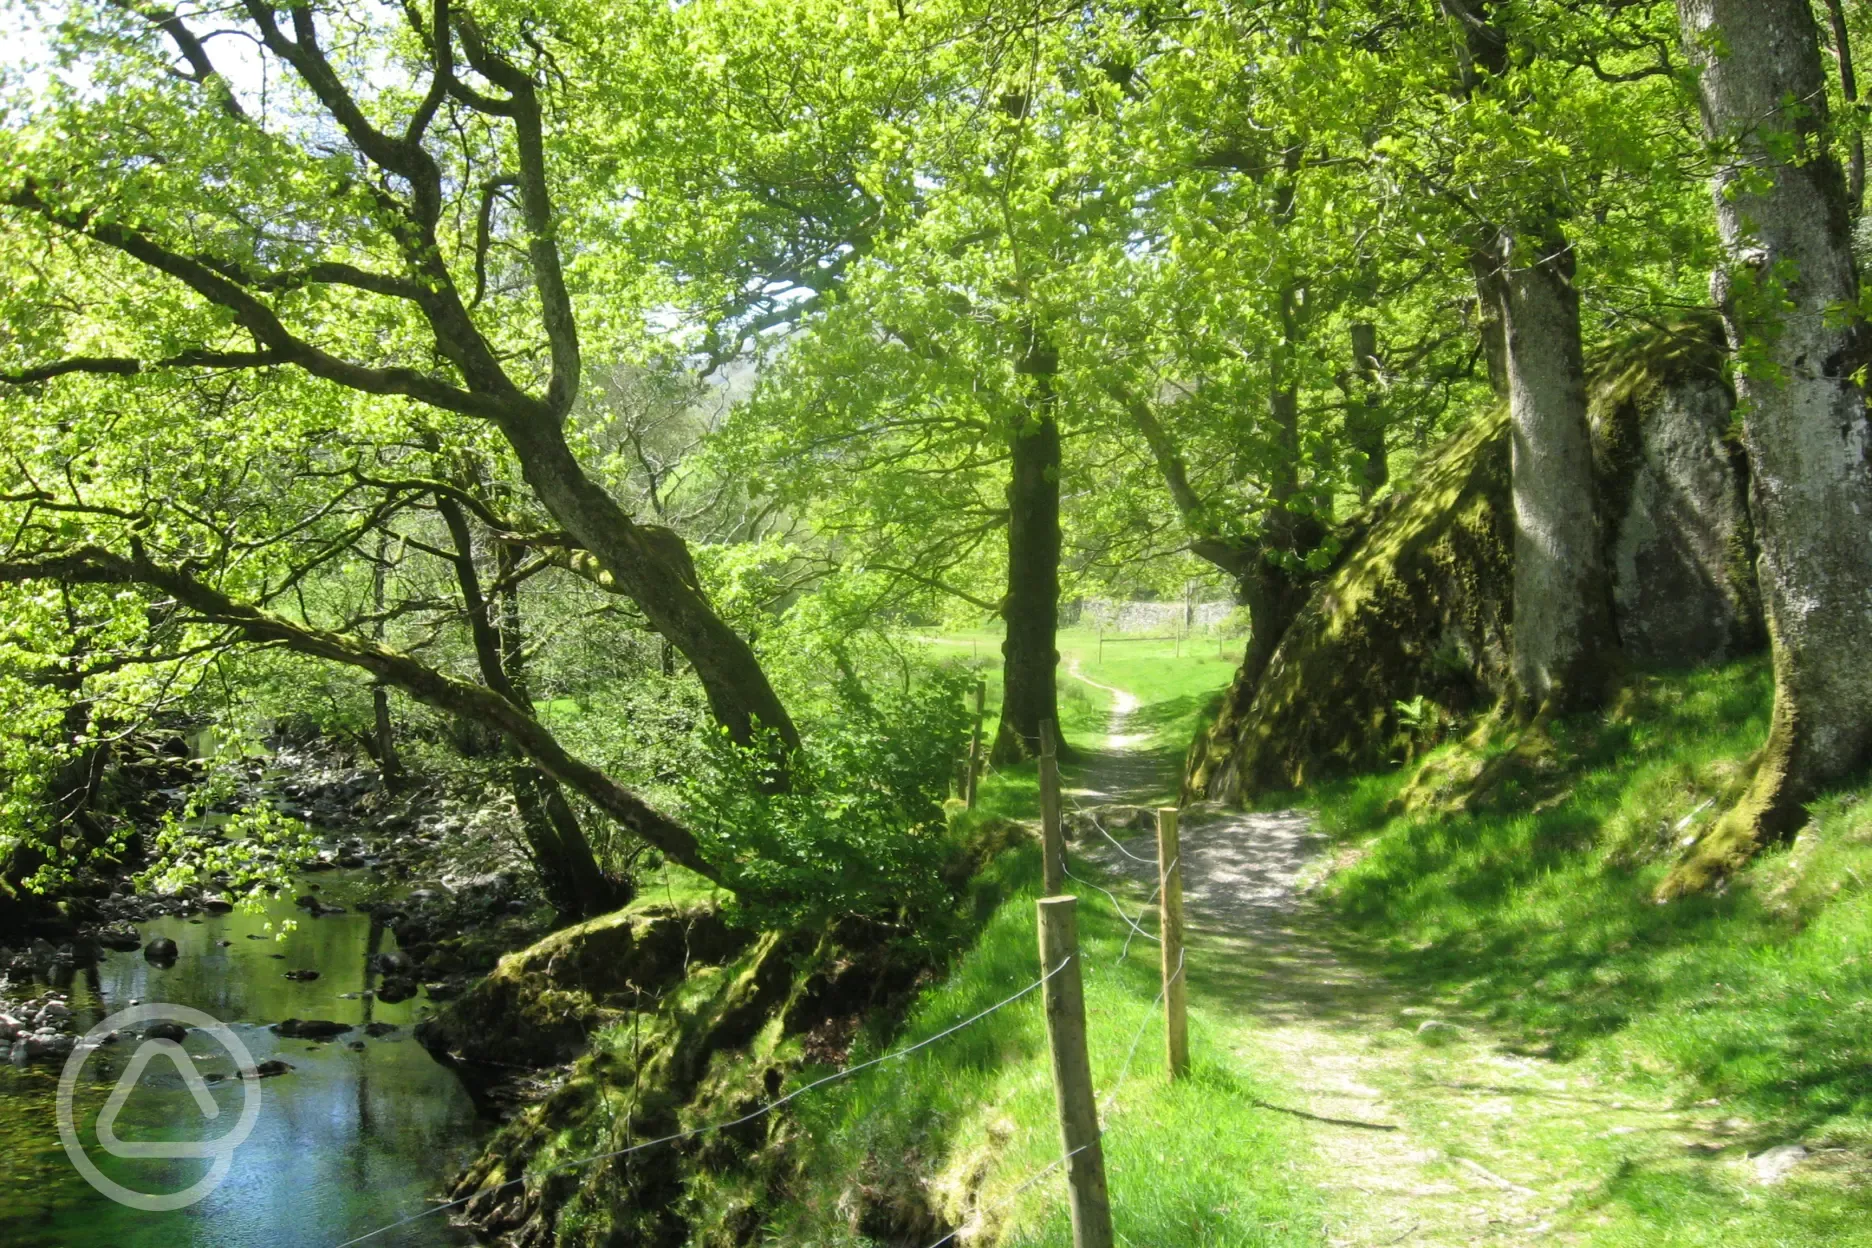 River Derwent through the site